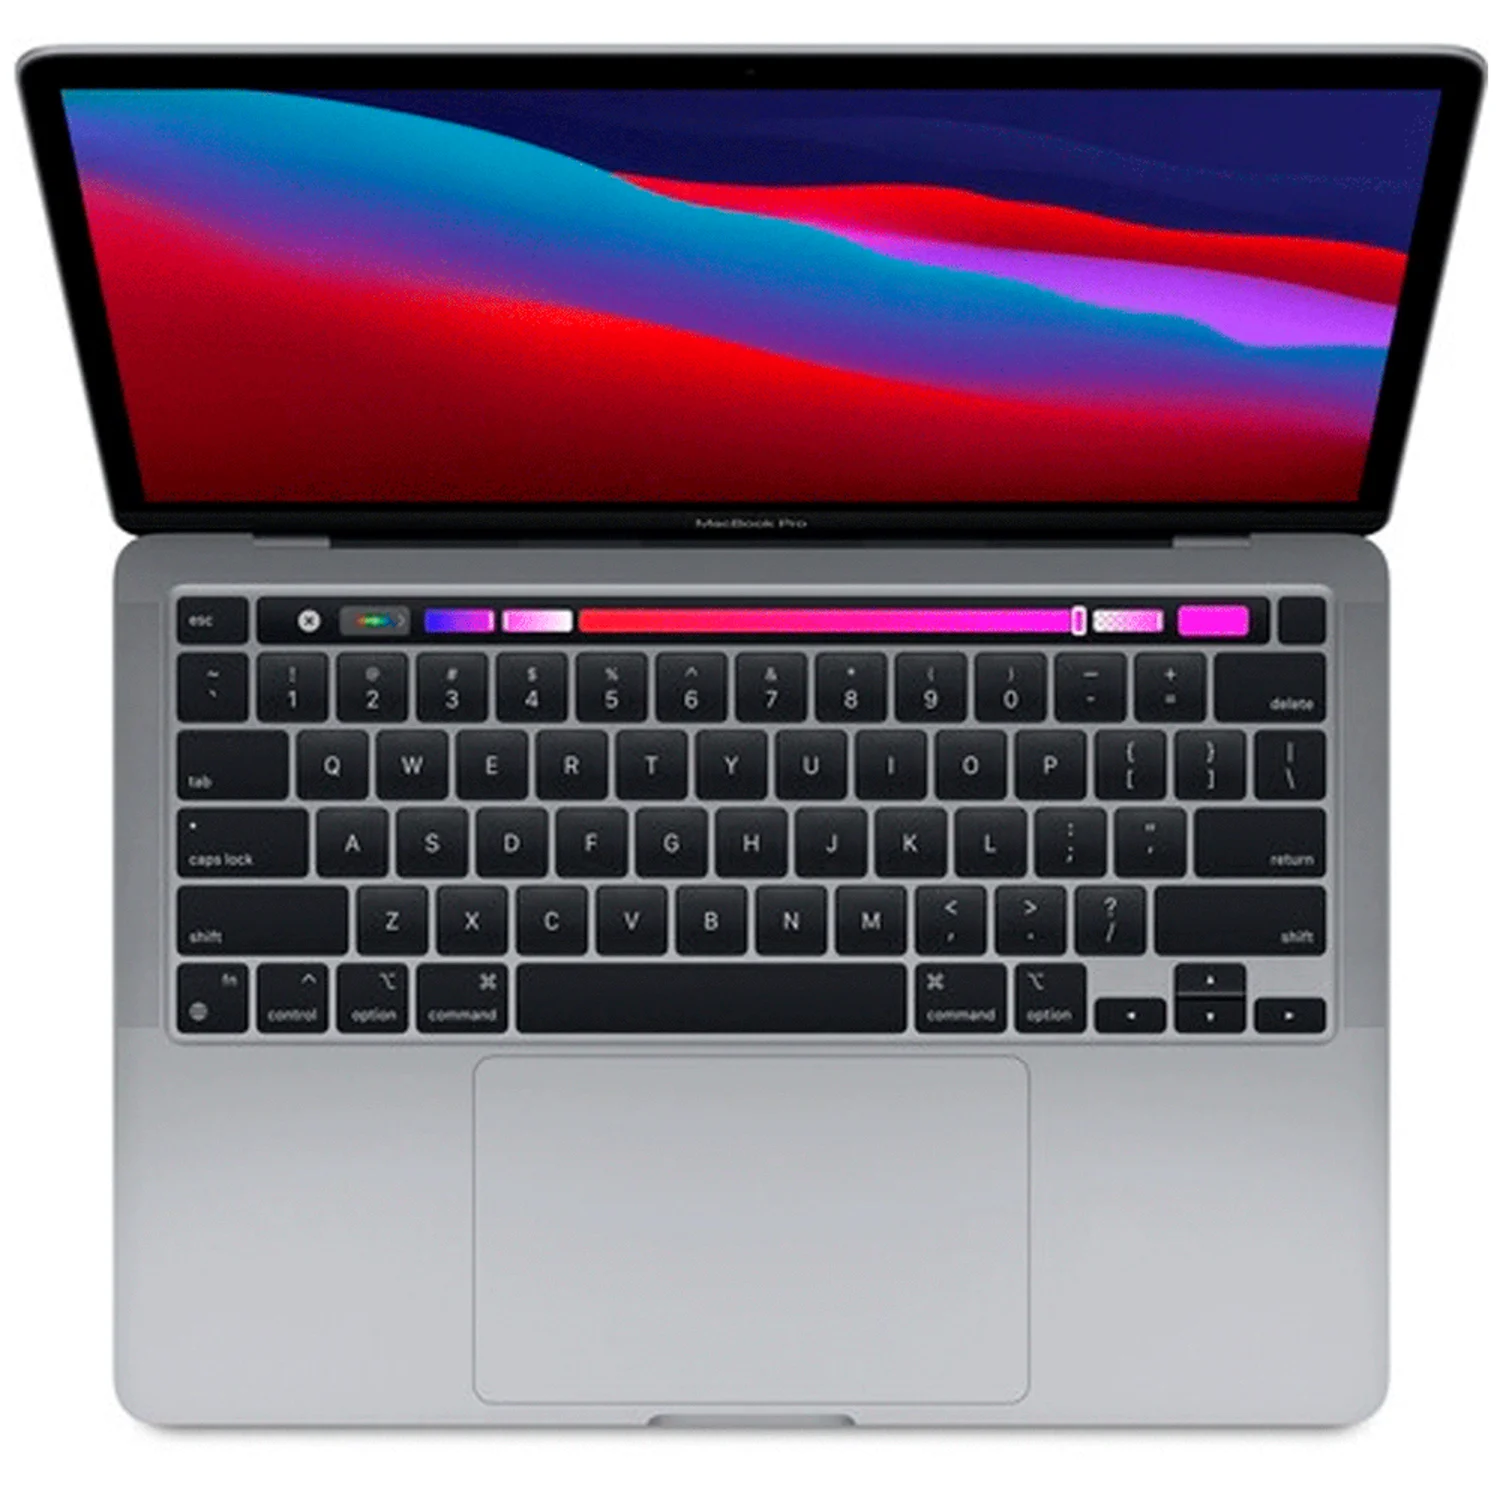 Apple Macbook Pro 2020 MYD82LL/A 13.3" Chip M1 256GB SSD 8GB RAM - Cinza Espacial